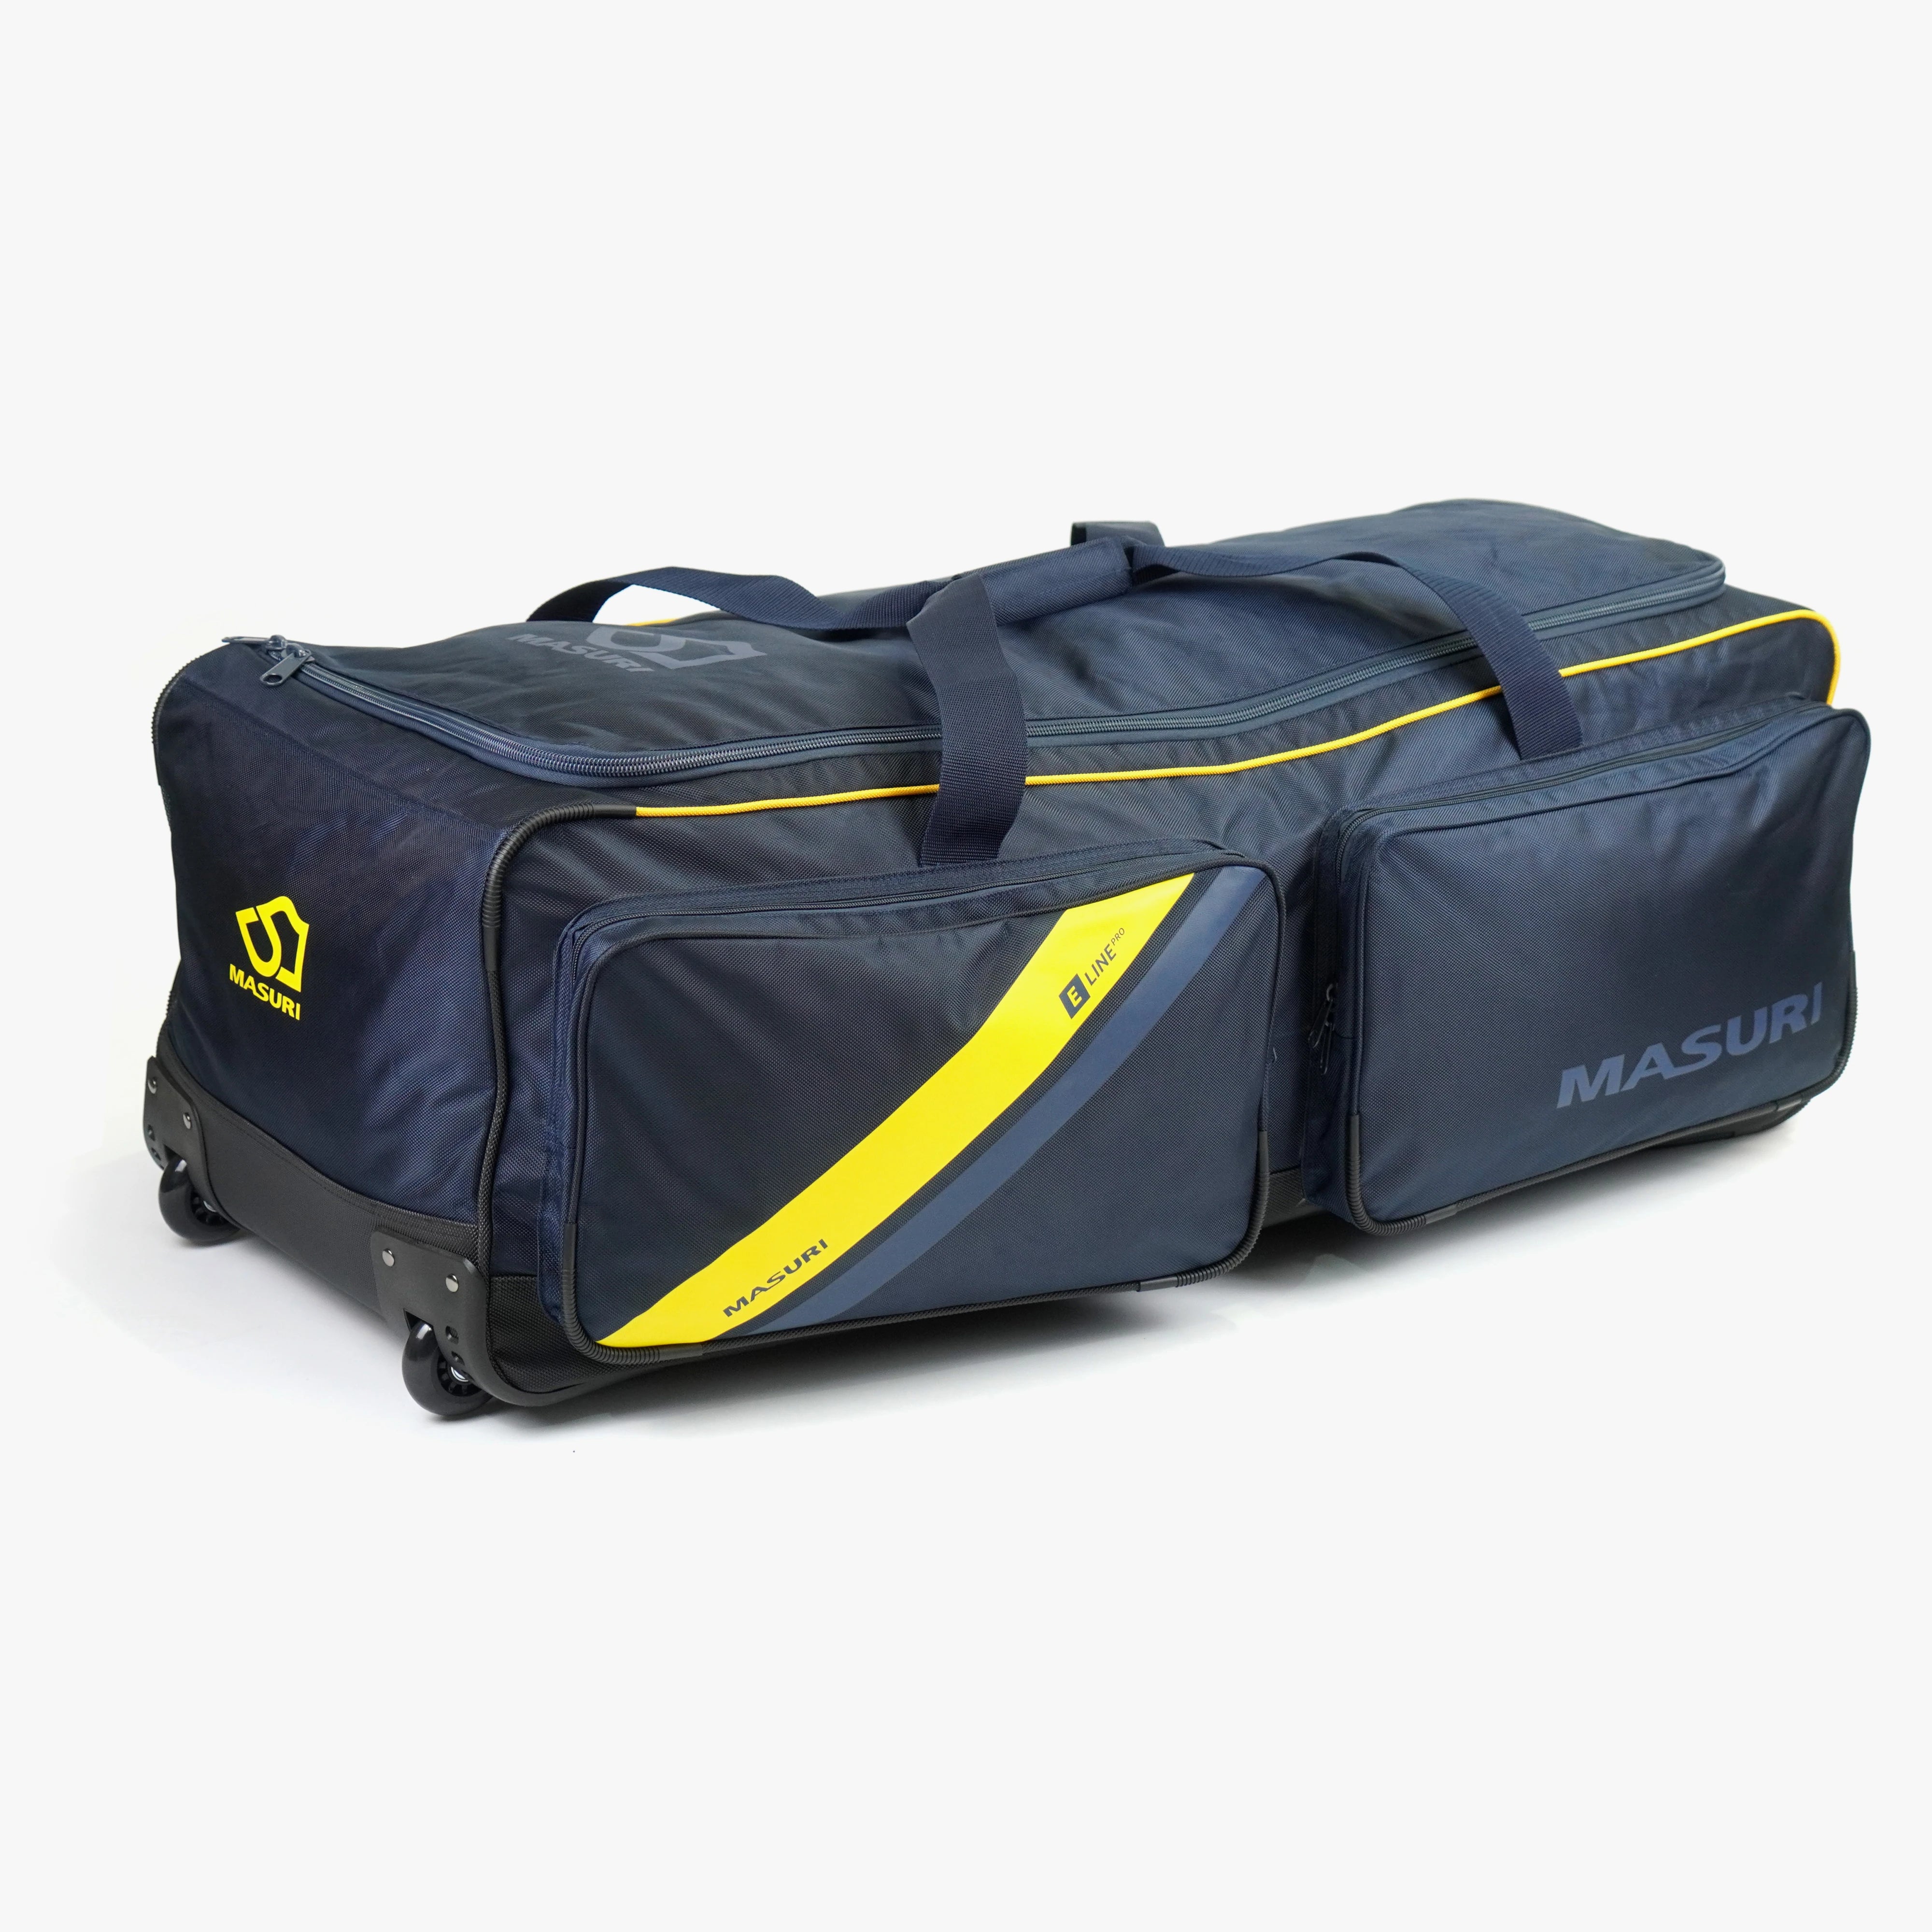 Masuri E line Pro Wheelie Cricket Kit Bag